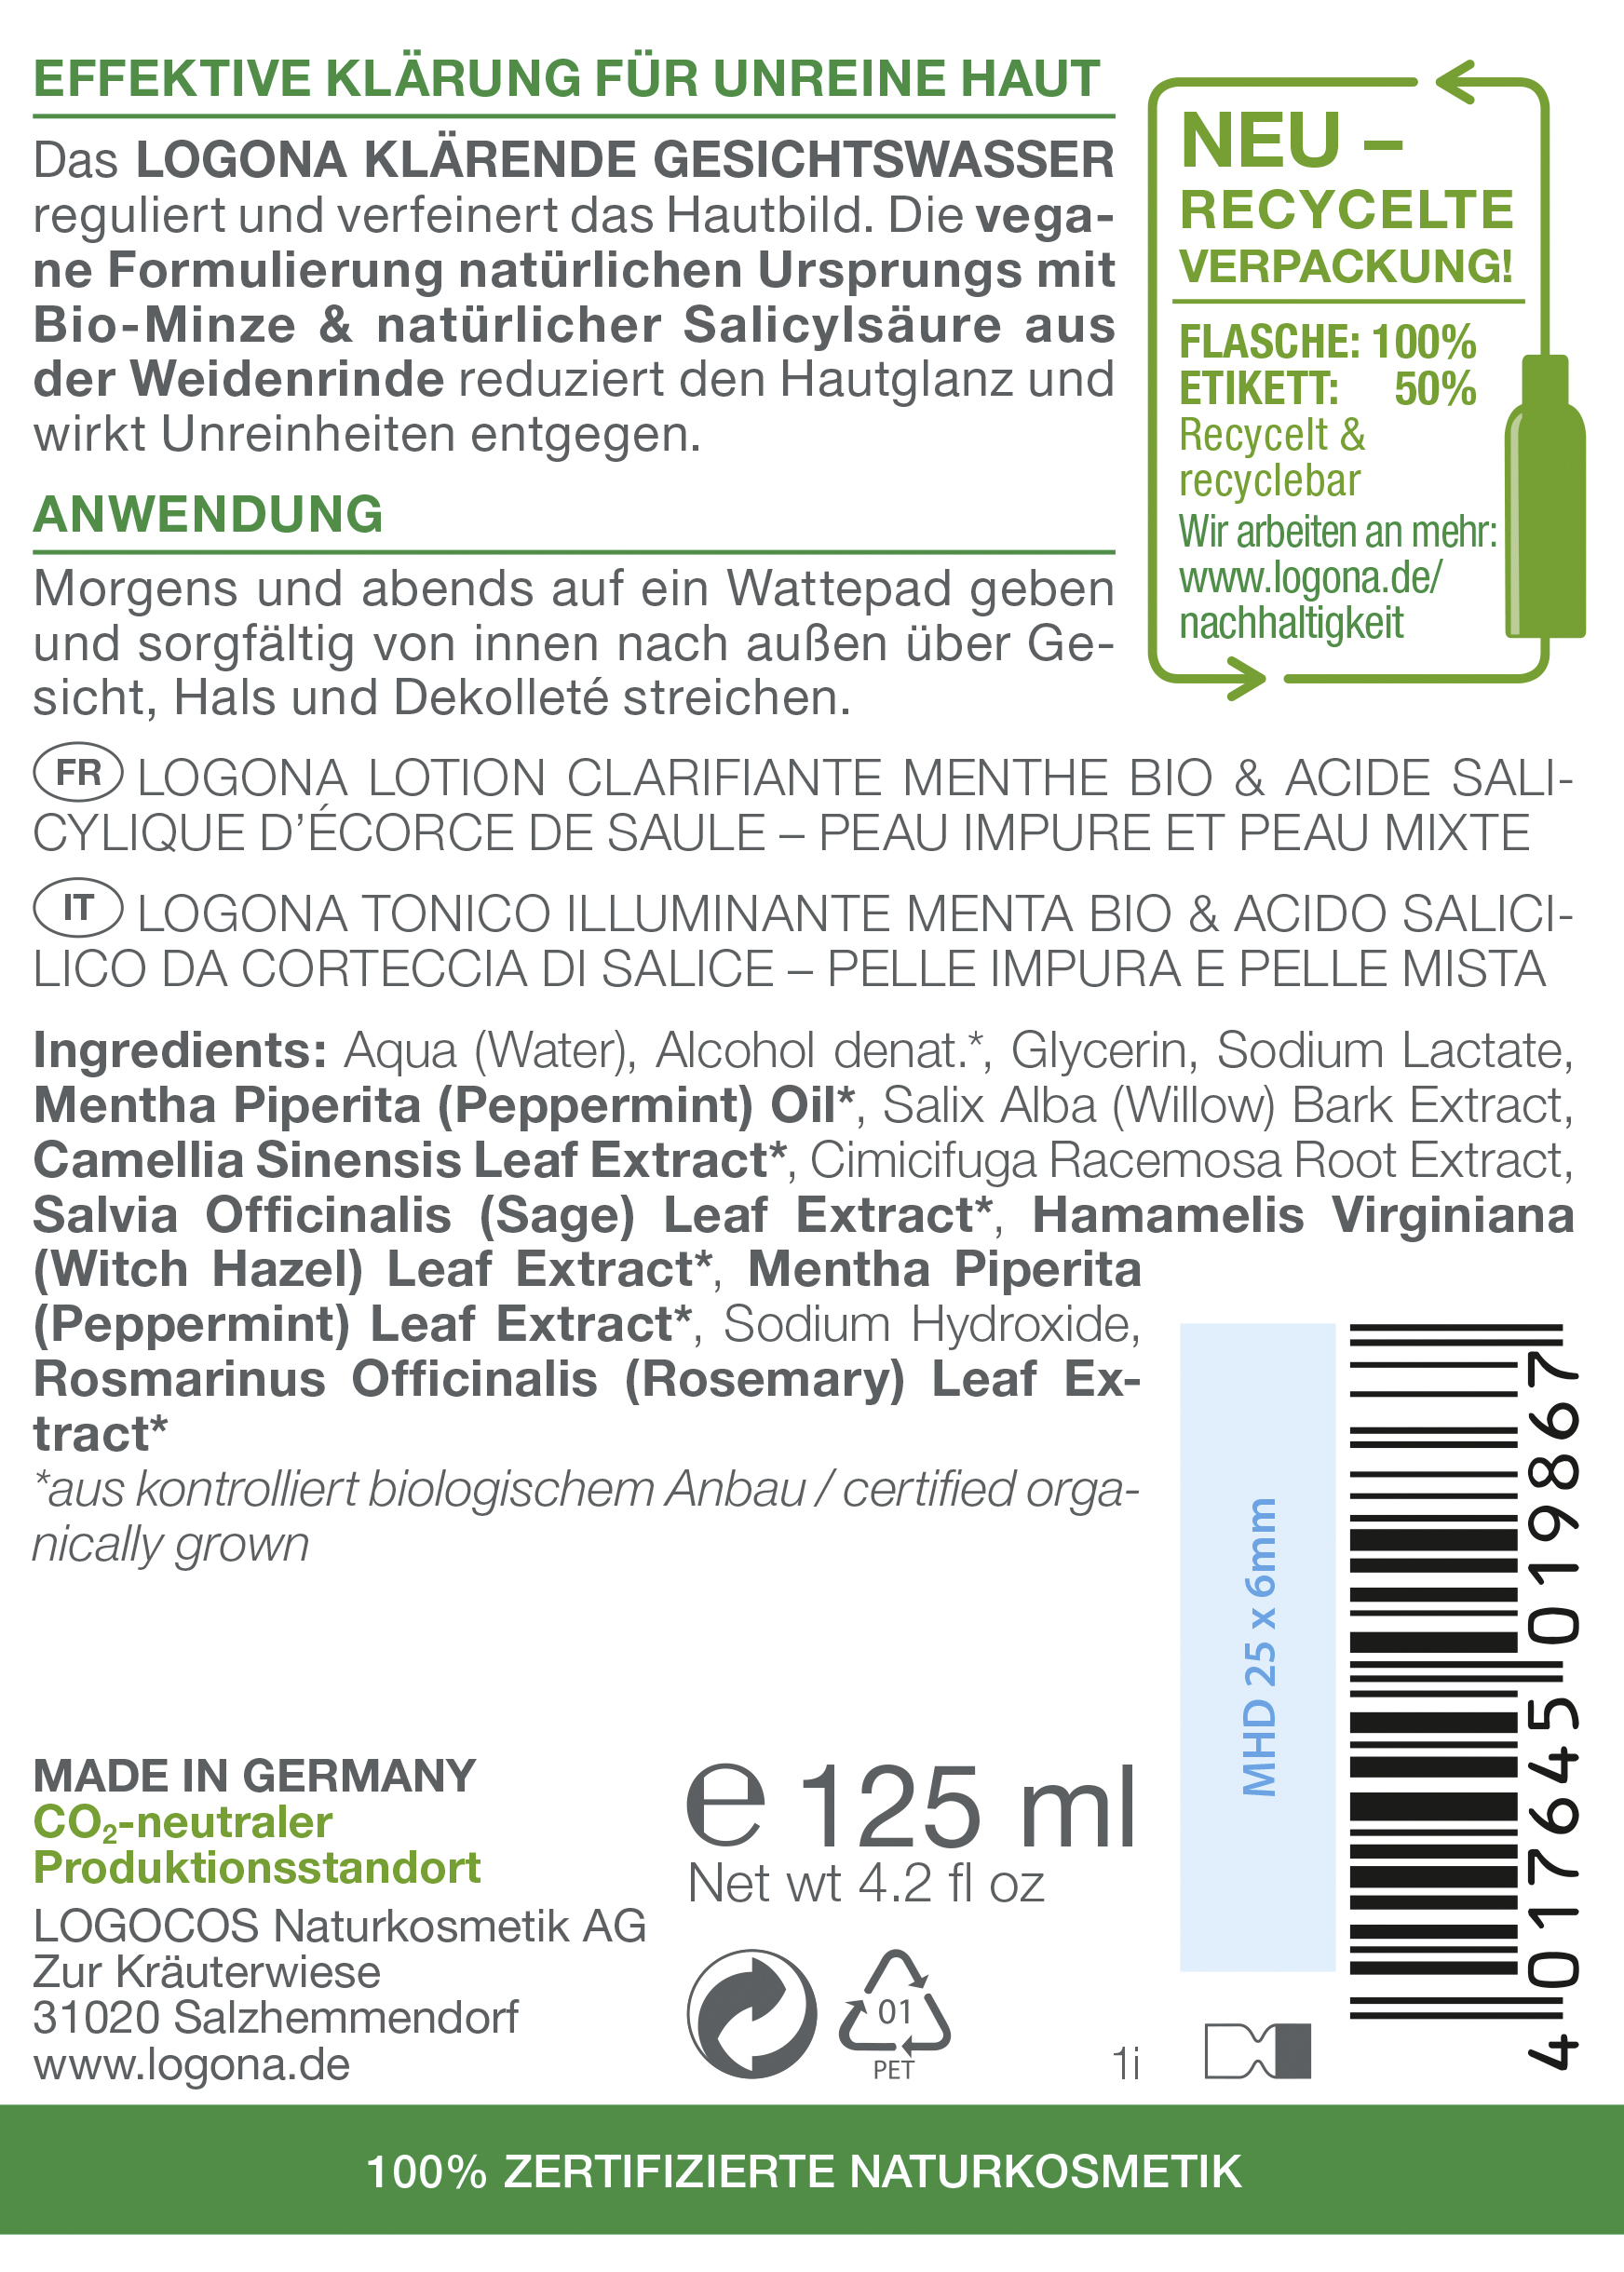 Logona PURIFY Klärendes Gesichtswasser Bio-Minze & Salicylsäure aus der  Weidenrinde 125 ml